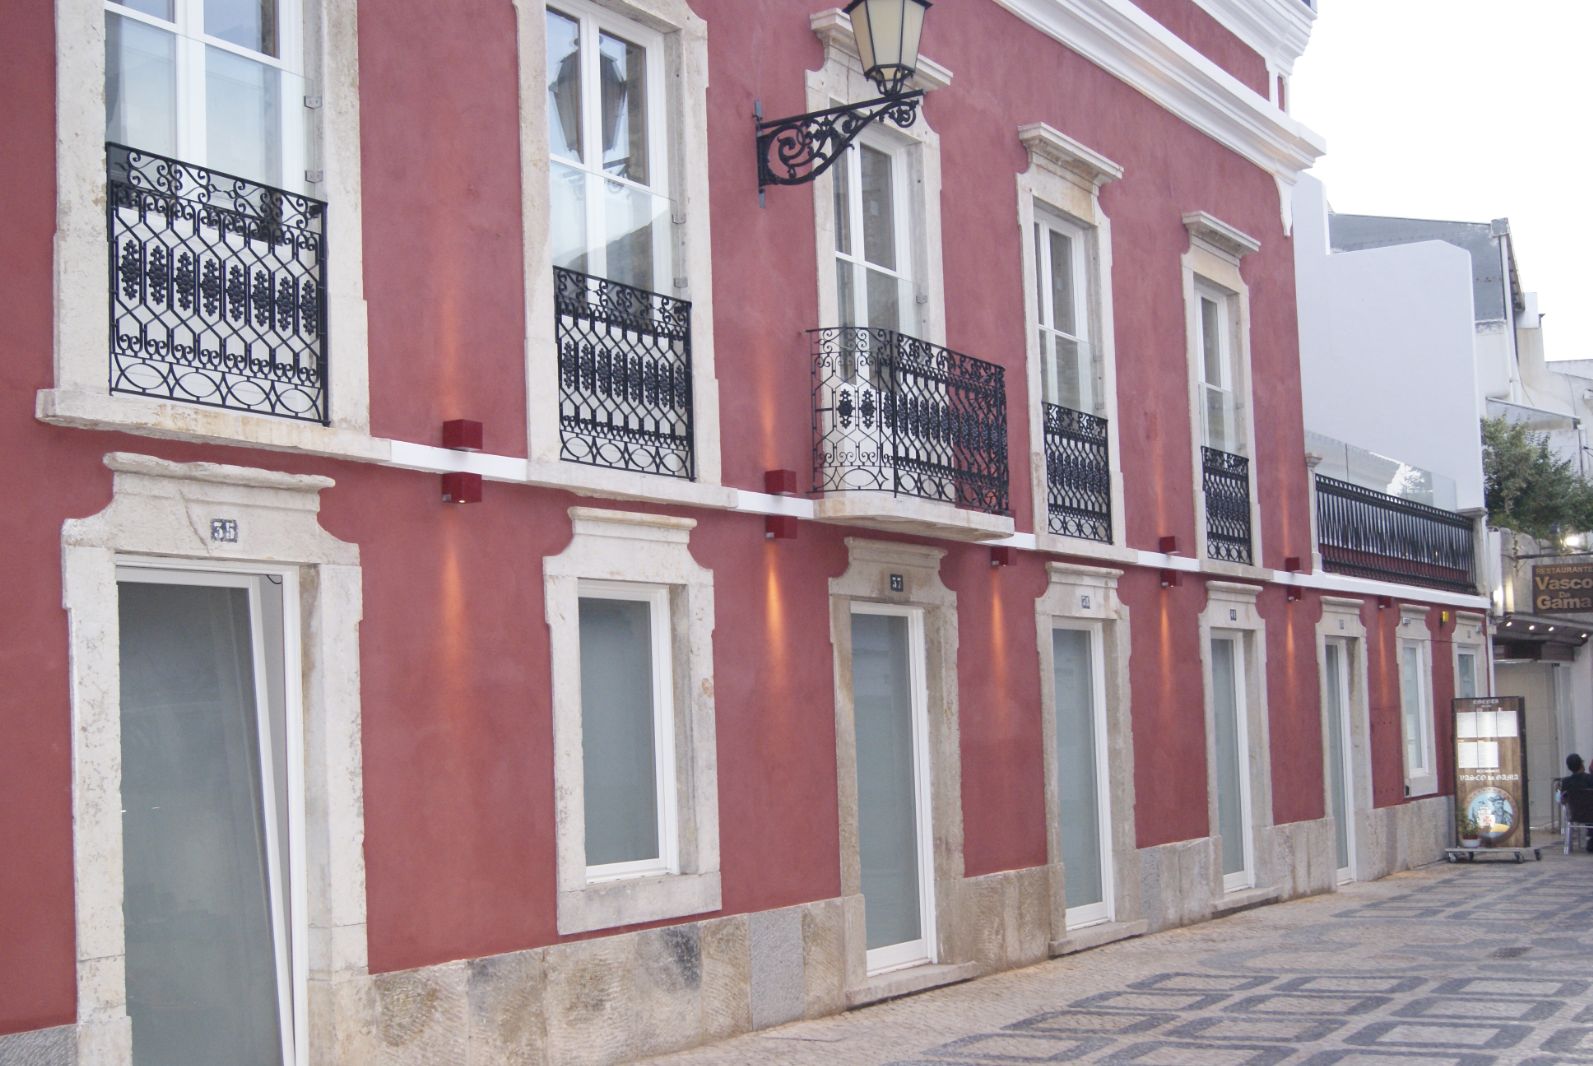 Algarve 2020 e IFRRU visitam projectos privados de reabilitação urbana